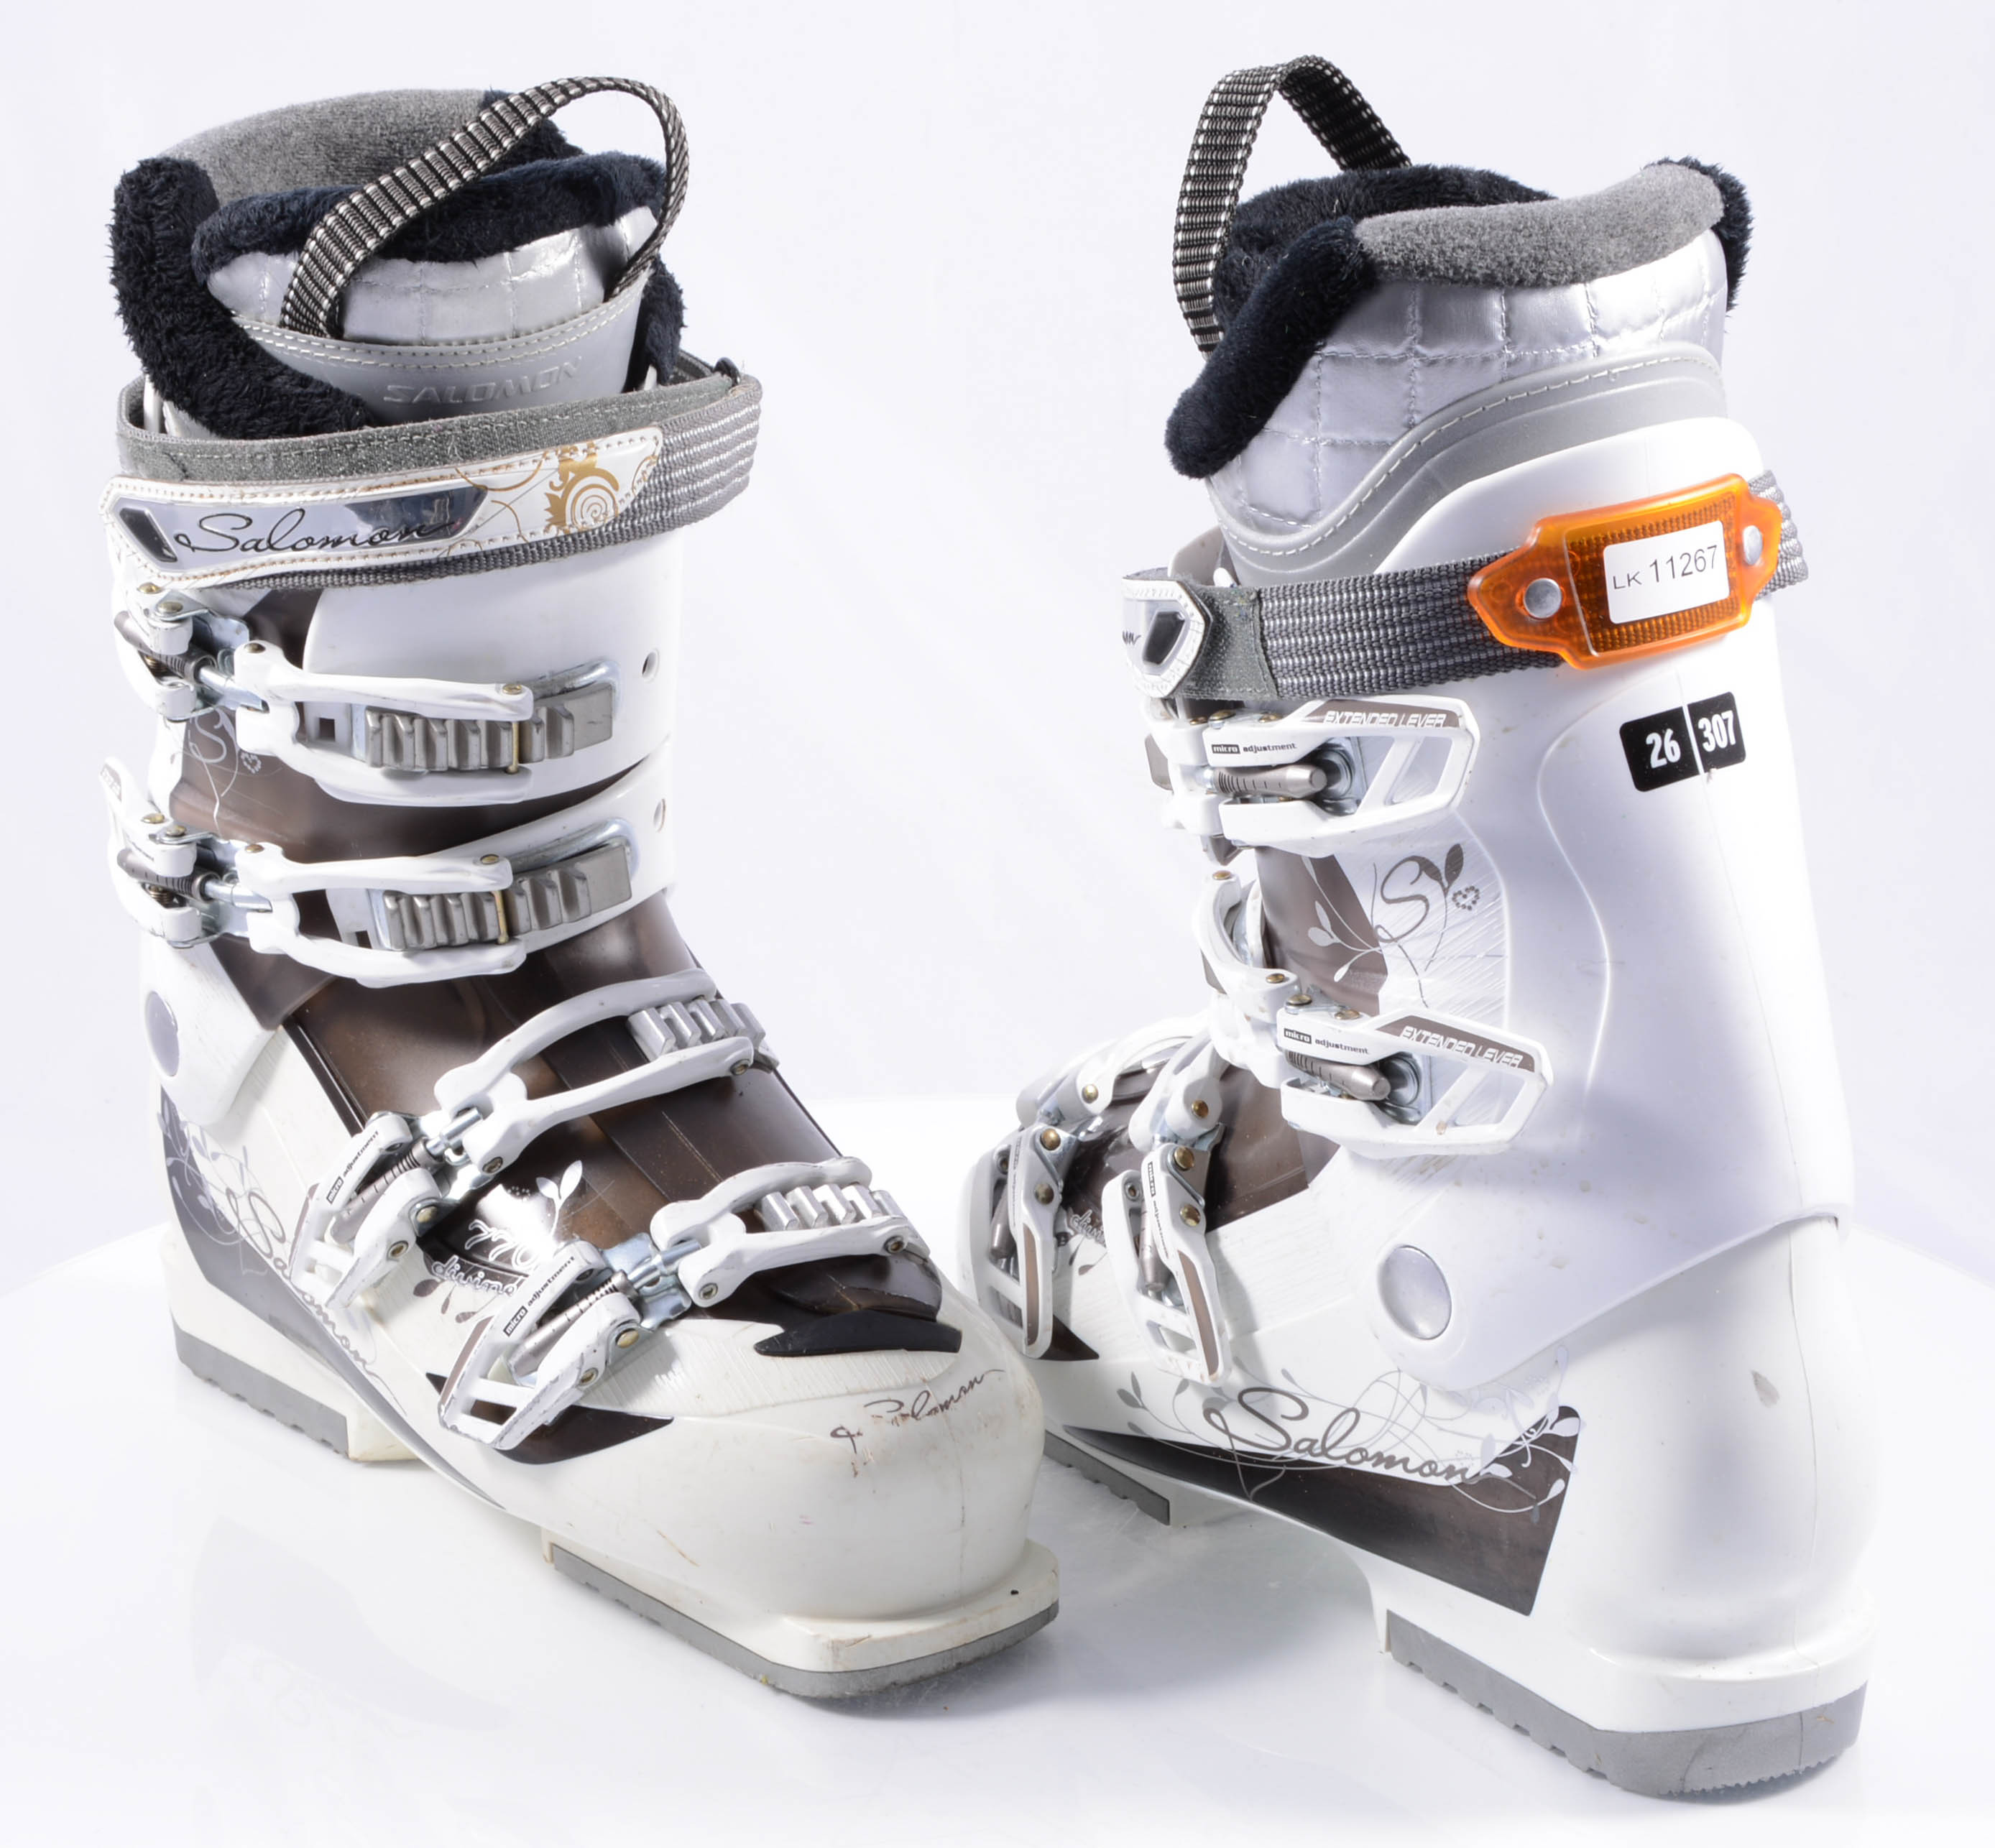 pompa Dempsey Refinería botas esquí mujer SALOMON DIVINE 770 W, extended lever, micro, macro,  white/brown - Mardosport.es